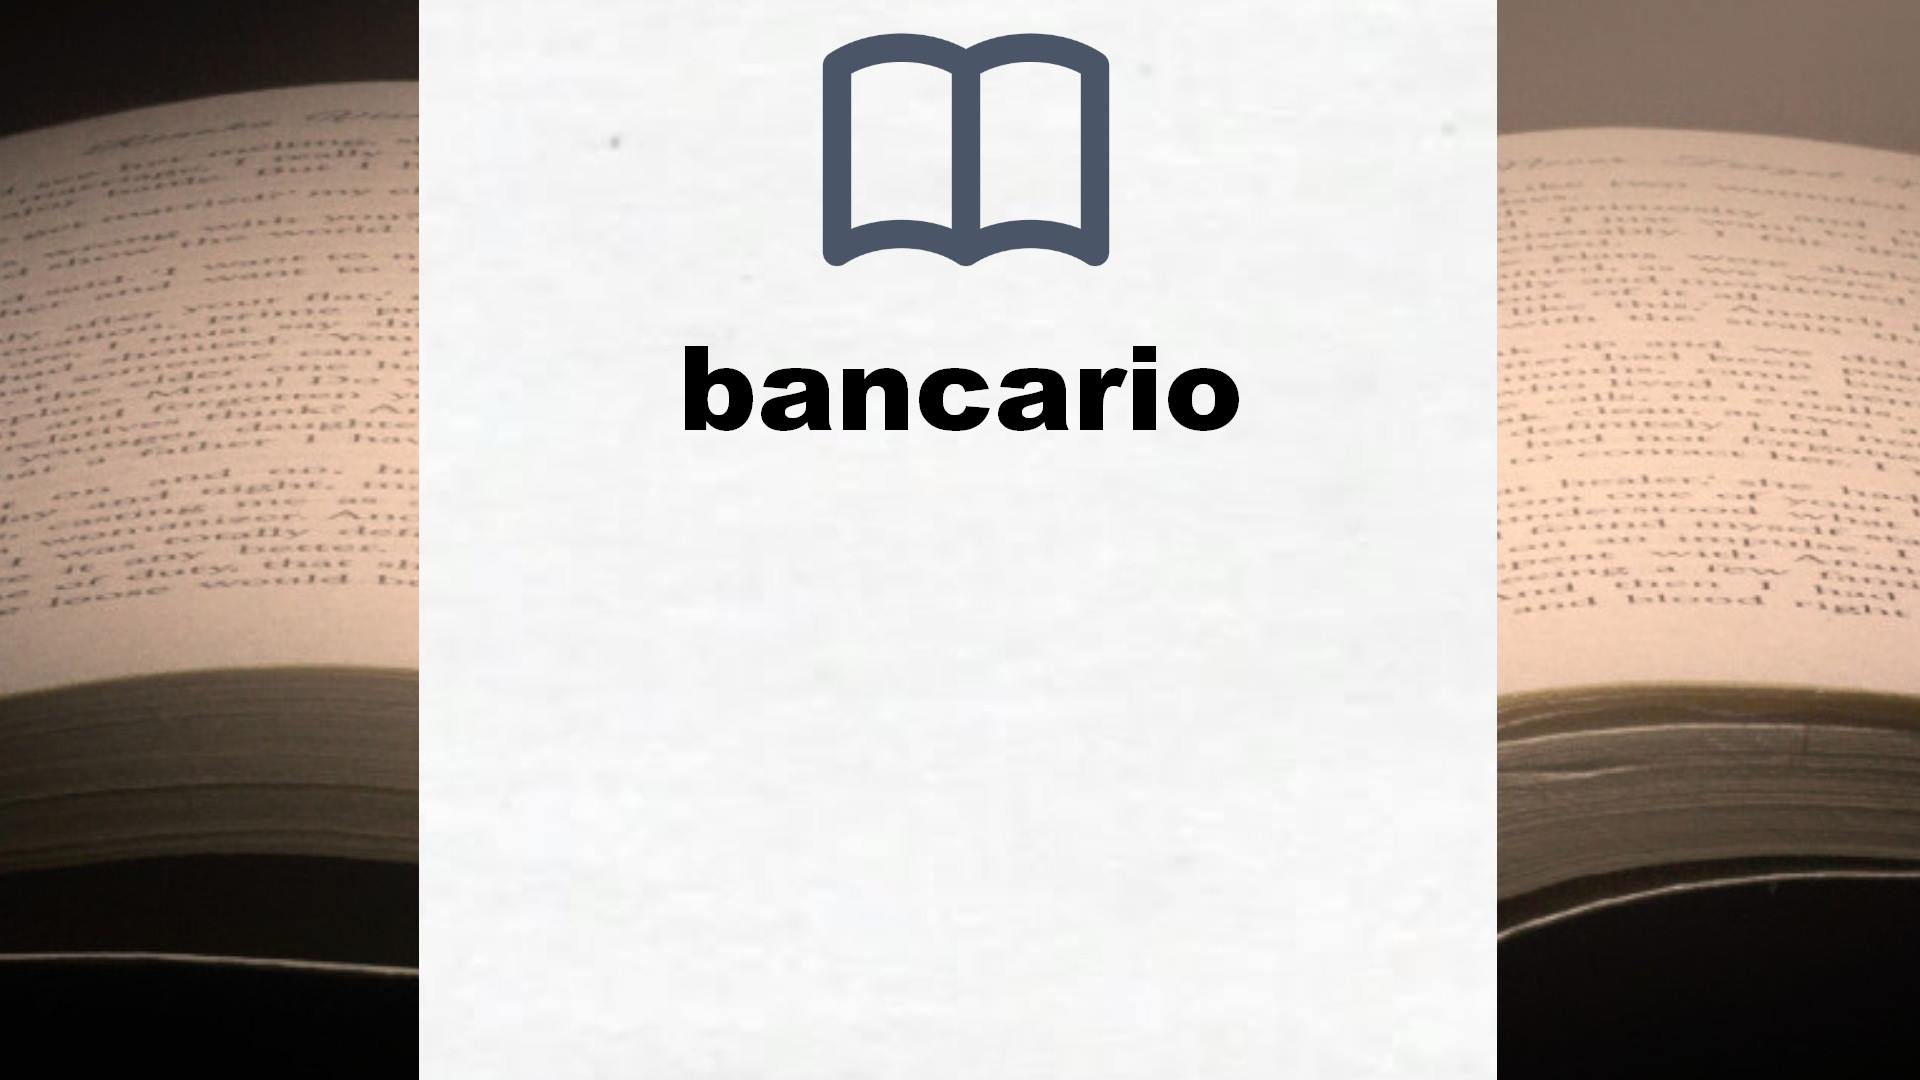 Libros sobre bancario